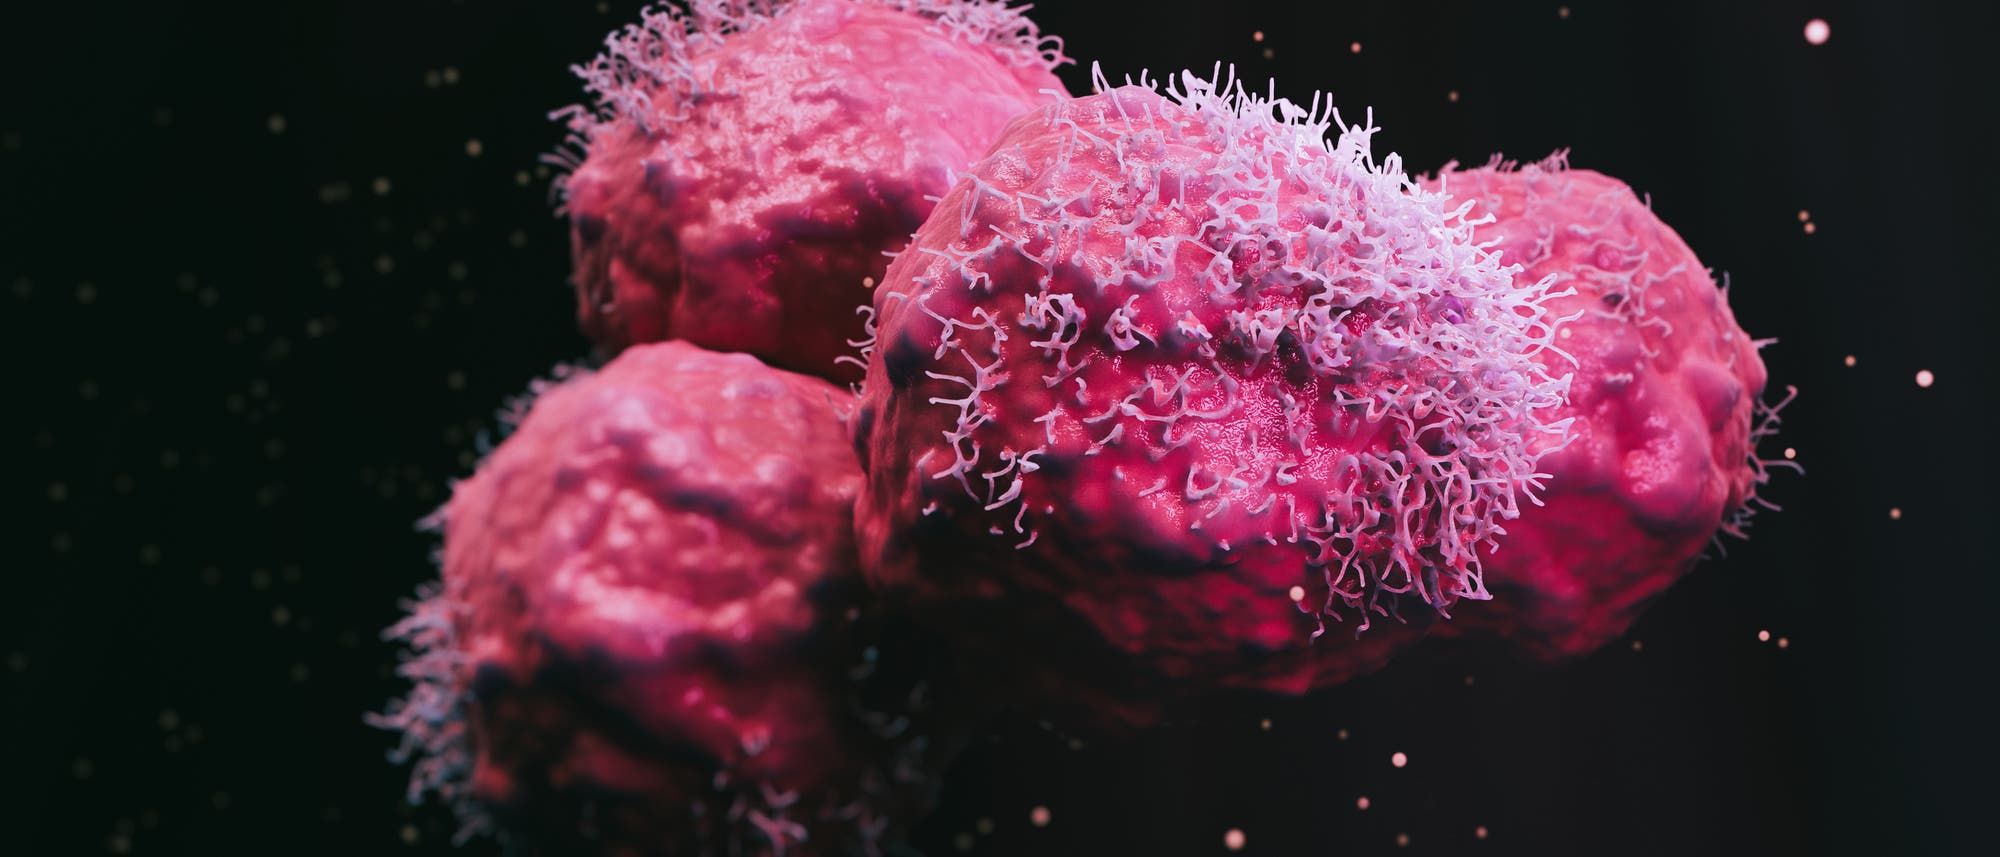 Pinke, abstrakte Krebszellen vor schwarzem Hintergrund